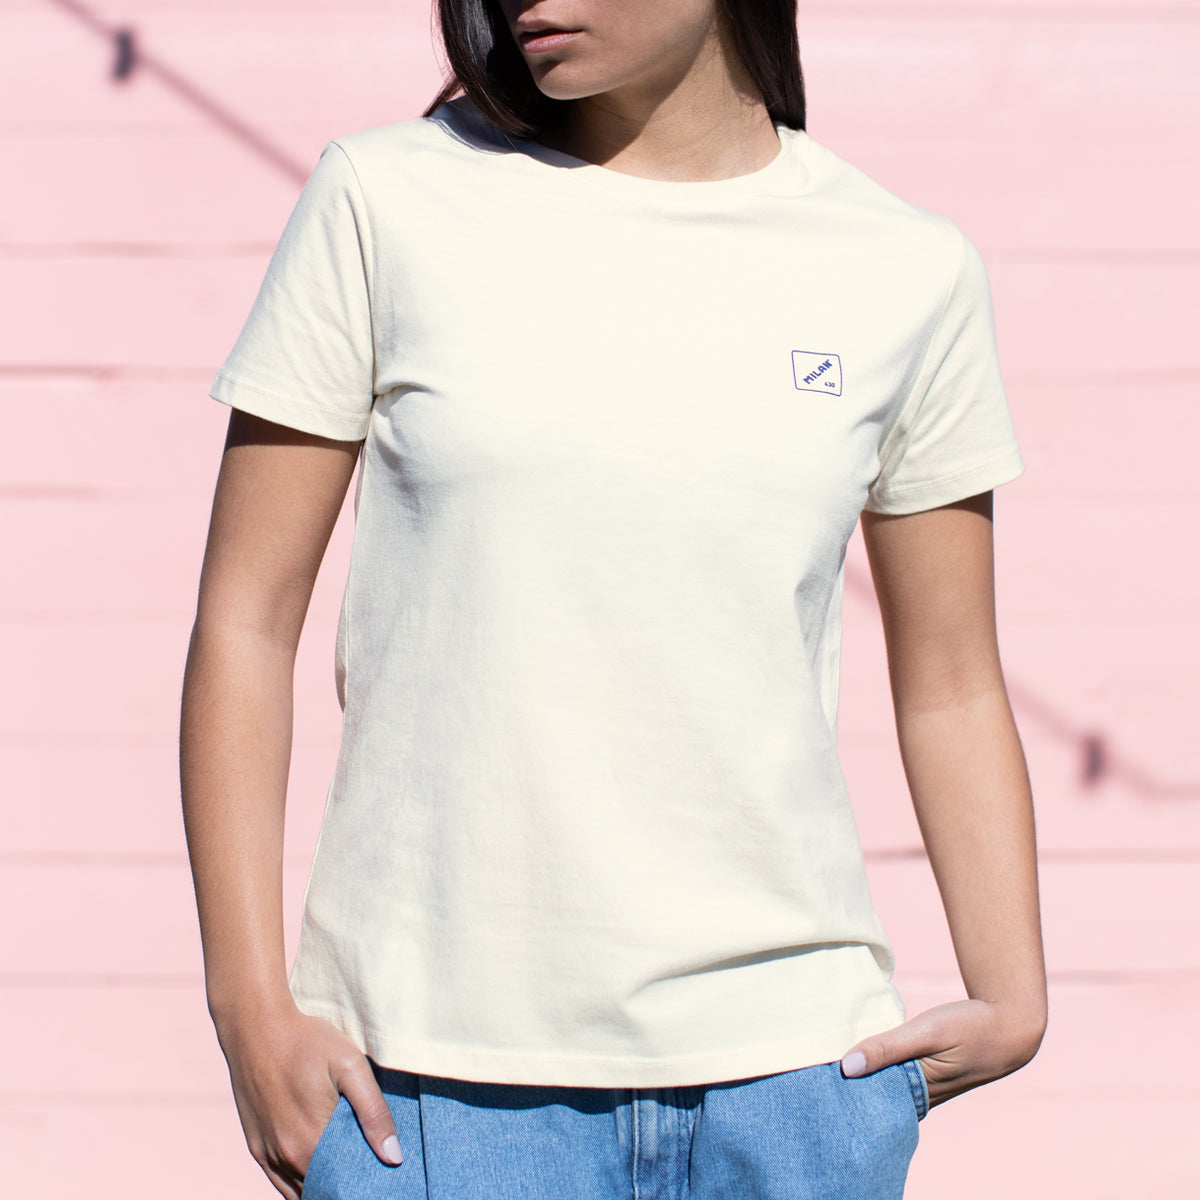 Camiseta mujer Slim Fit 430 since 1918, inspirada en las gomas de borrar MILAN